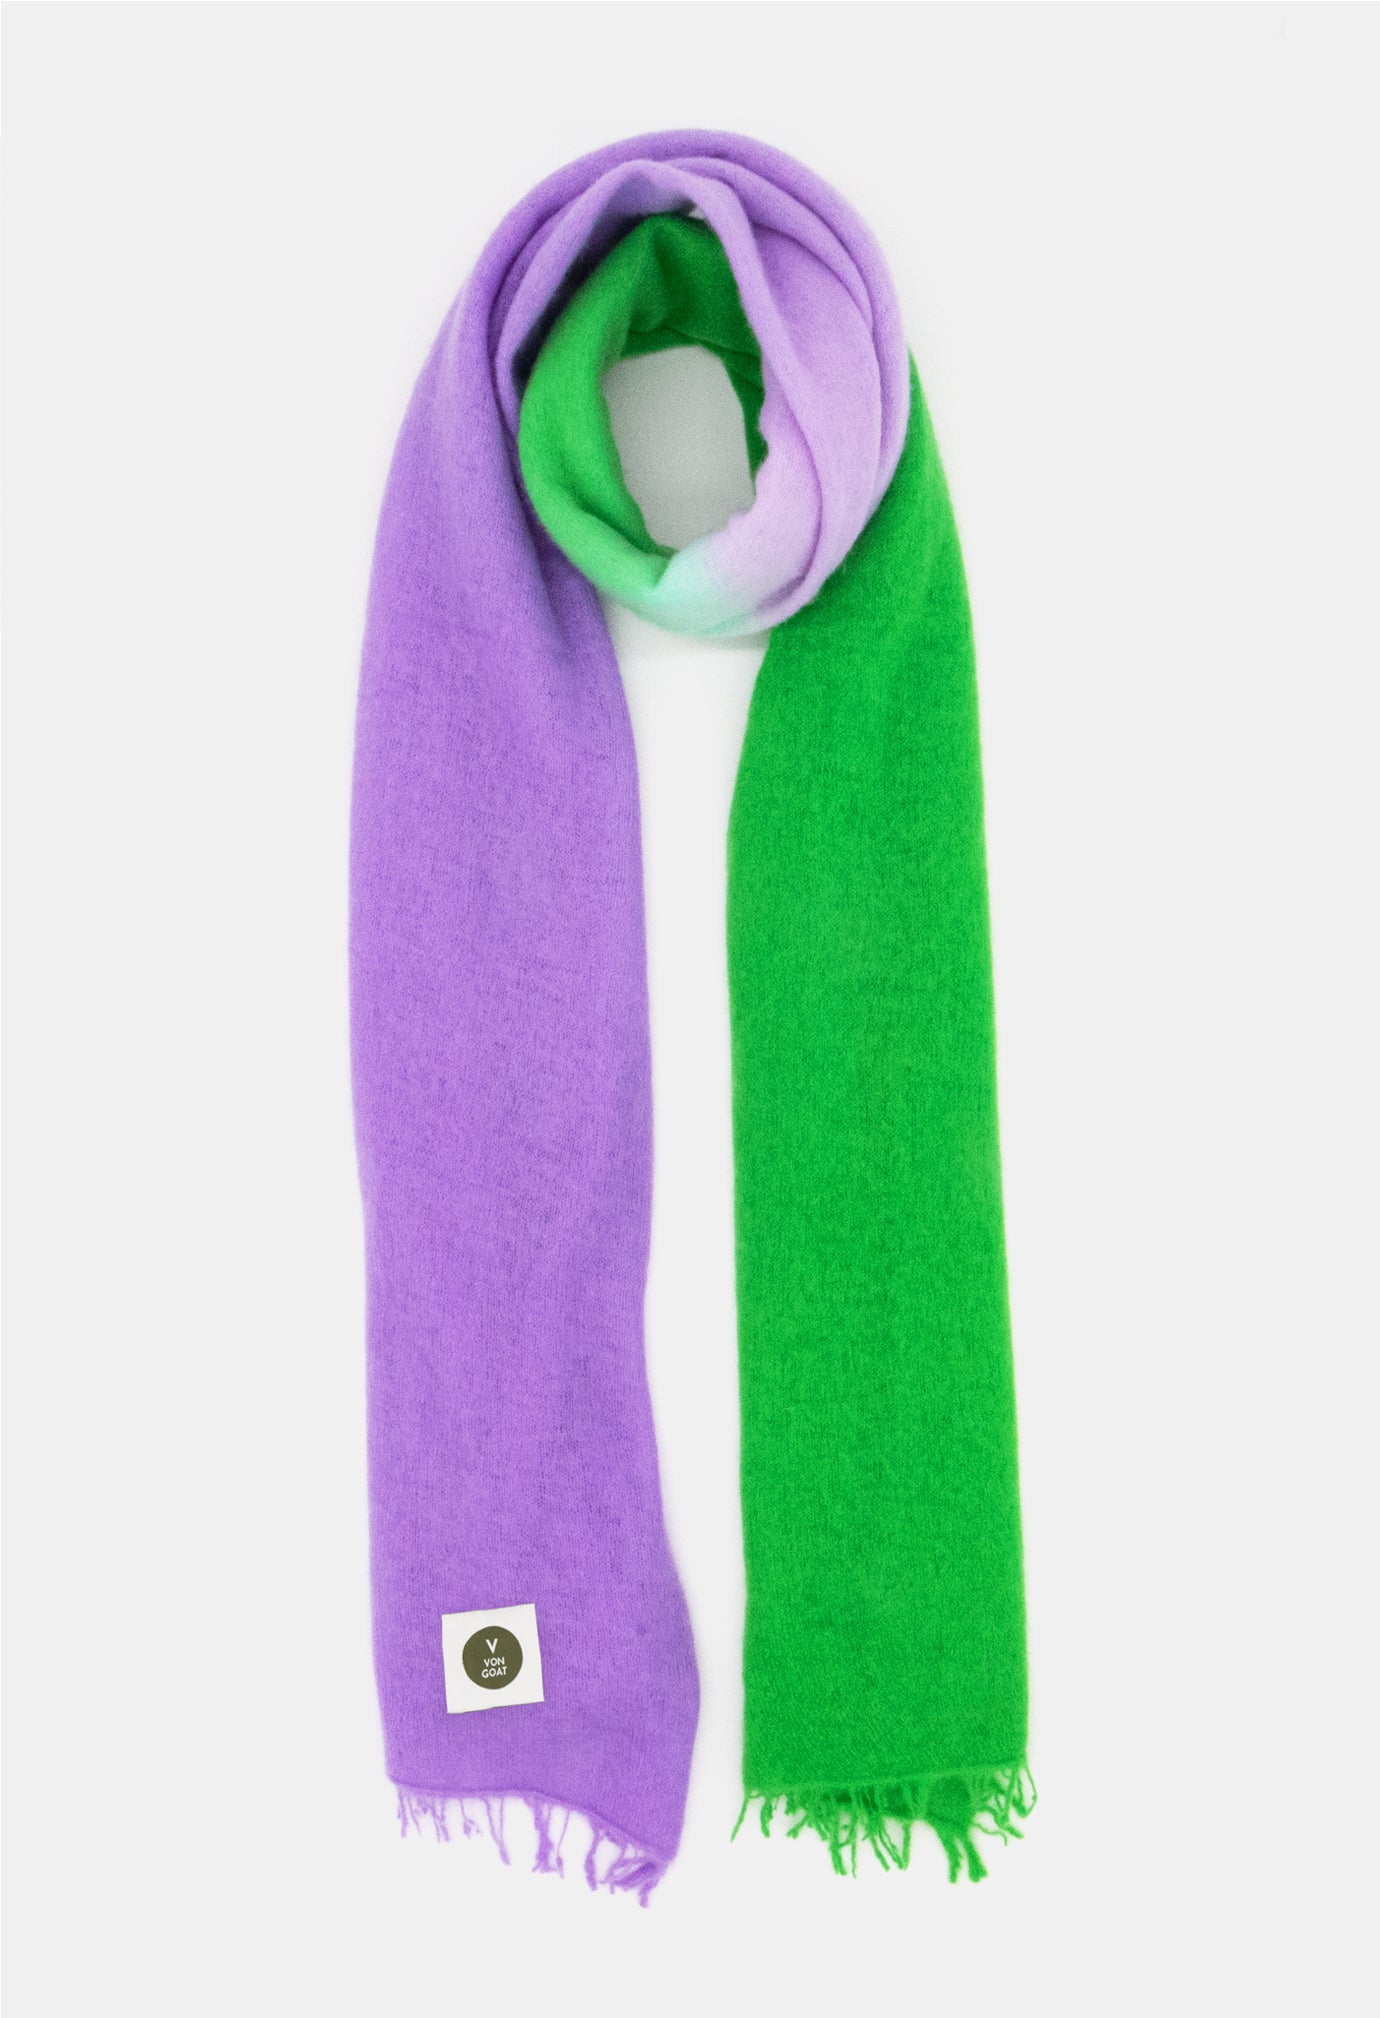 V Von Goat Kaschmir-Schal mit Fransen im Tiedye-Stil in den Farben Grün und Lila aus reiner Cashmere-Wolle auf weißem Untergrund.